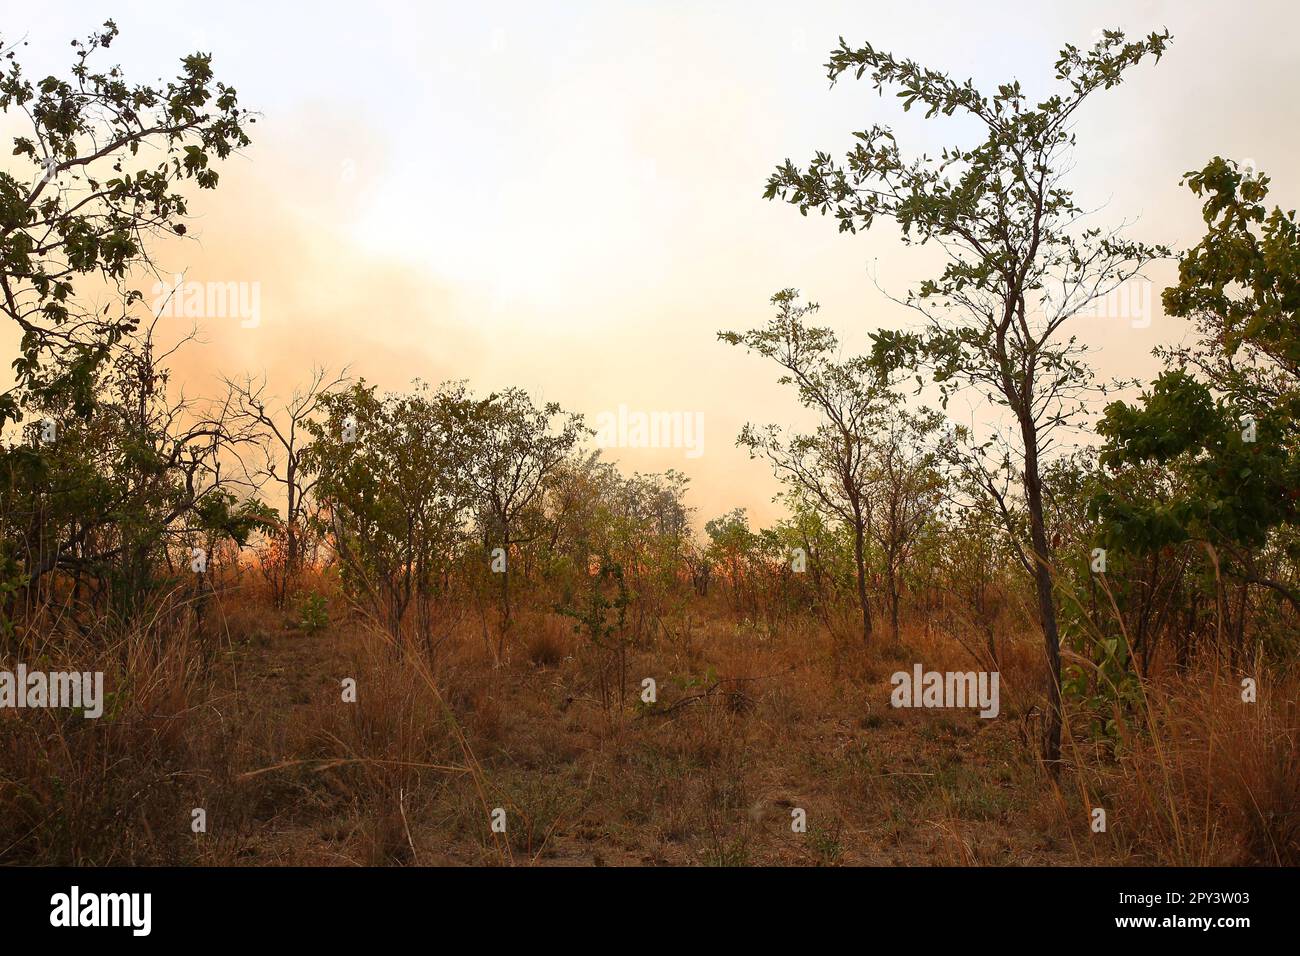 Afrikanischer Busch - Krügerpark - Buschfeuer / African Bush - Kruger Park - Bushfire / Stock Photo